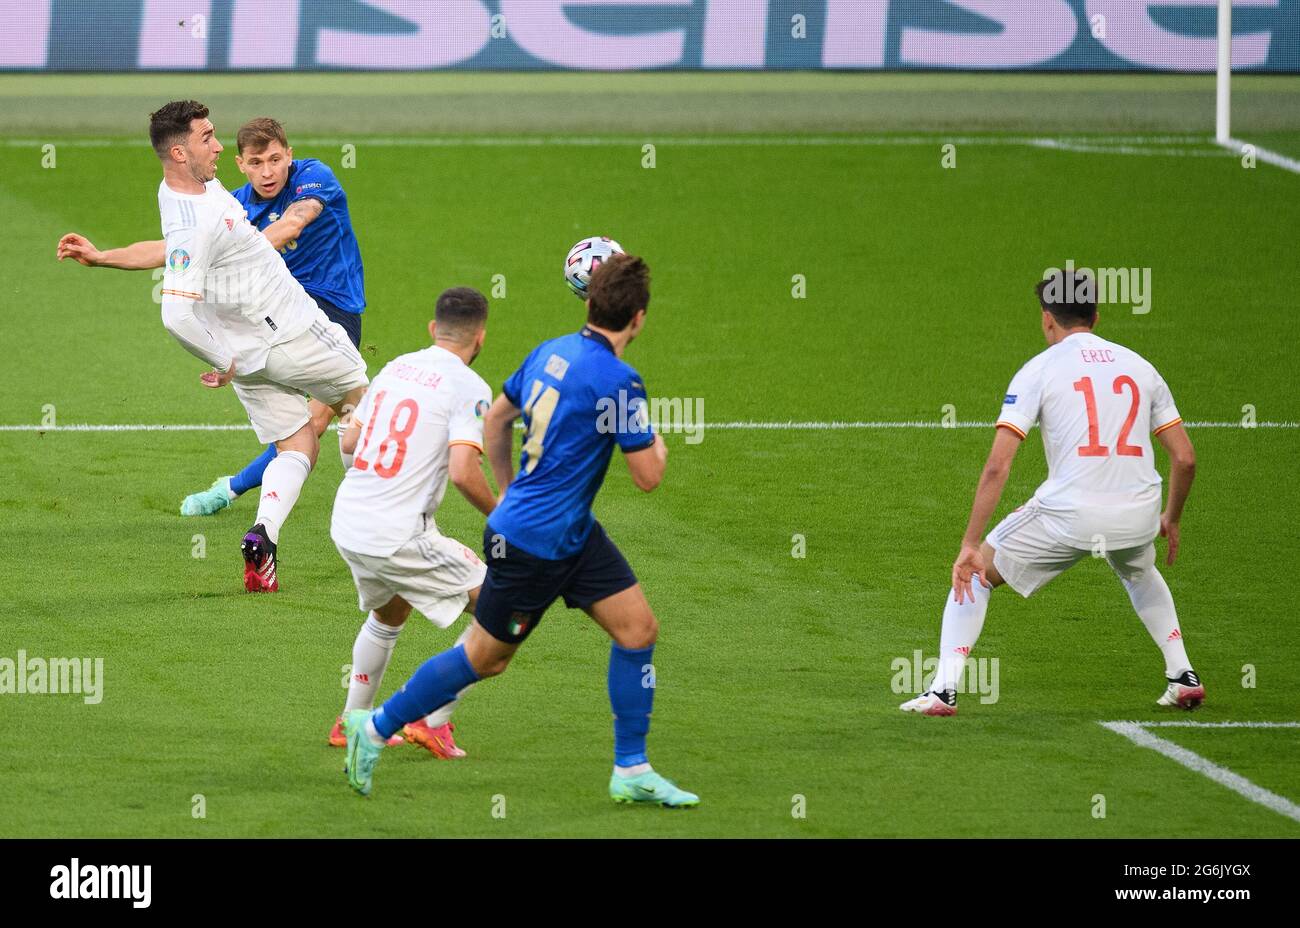 07 juillet 2021 - Italie / Espagne - UEFA Euro 2020 semi-finale - Wembley - Londres Nicolo Barrella de l'Italie tire sur Unai Simon et frappe le poste tôt dans le match crédit photo : © Mark pain / Alamy Live News Banque D'Images